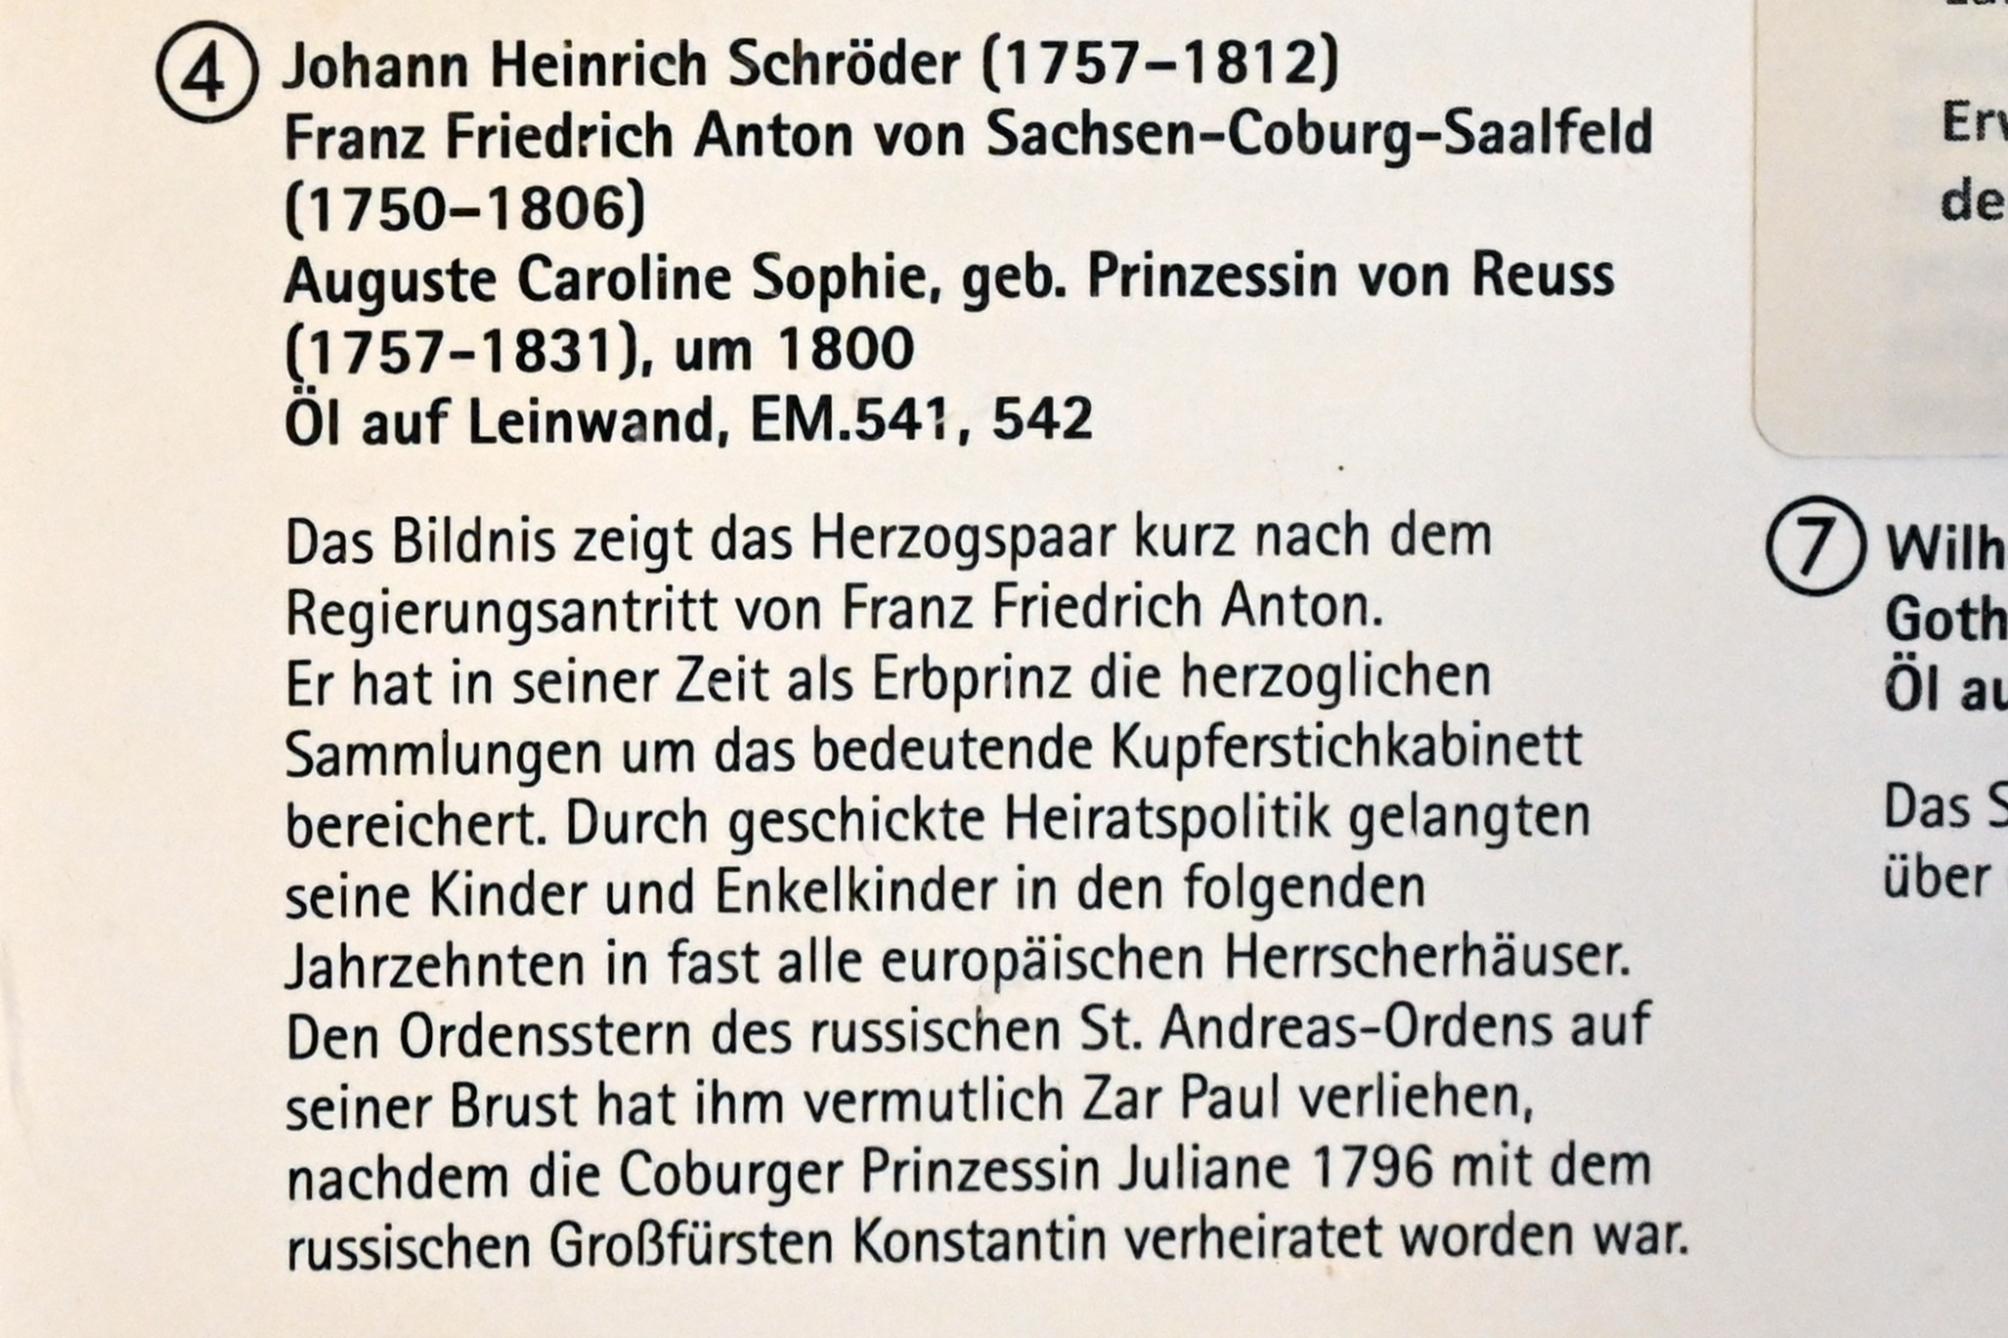 Johann Heinrich Schröder (1800), Auguste Caroline Sophie, geb. Prinzessin von Reuss (1757-1831), Coburg, Kunstsammlungen der Veste Coburg, Fremdenkorridor, um 1800, Bild 2/3